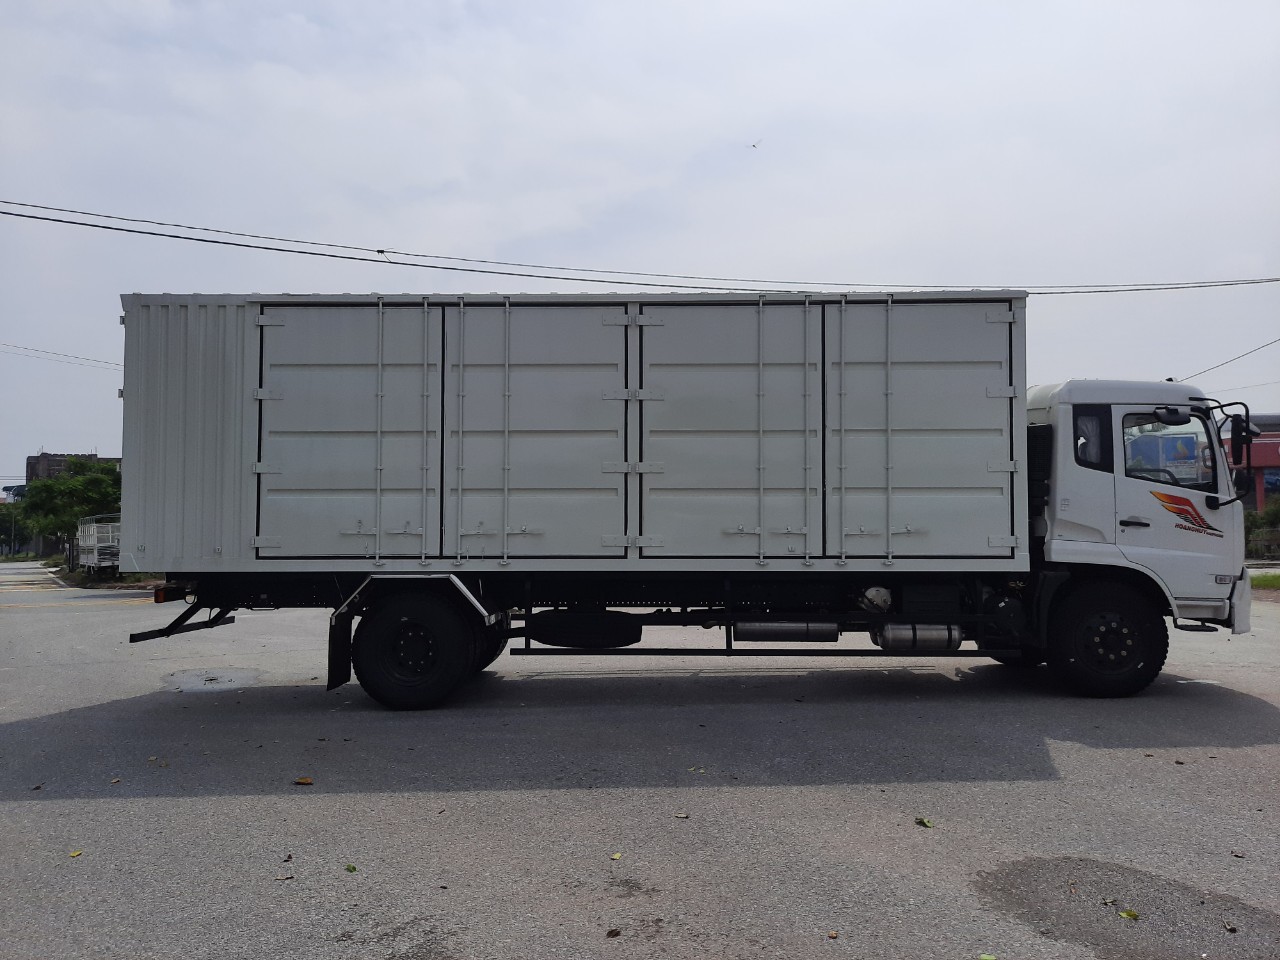 Xe tải thùng kín Container 7,8 mét Dongfeng Hoàng Huy